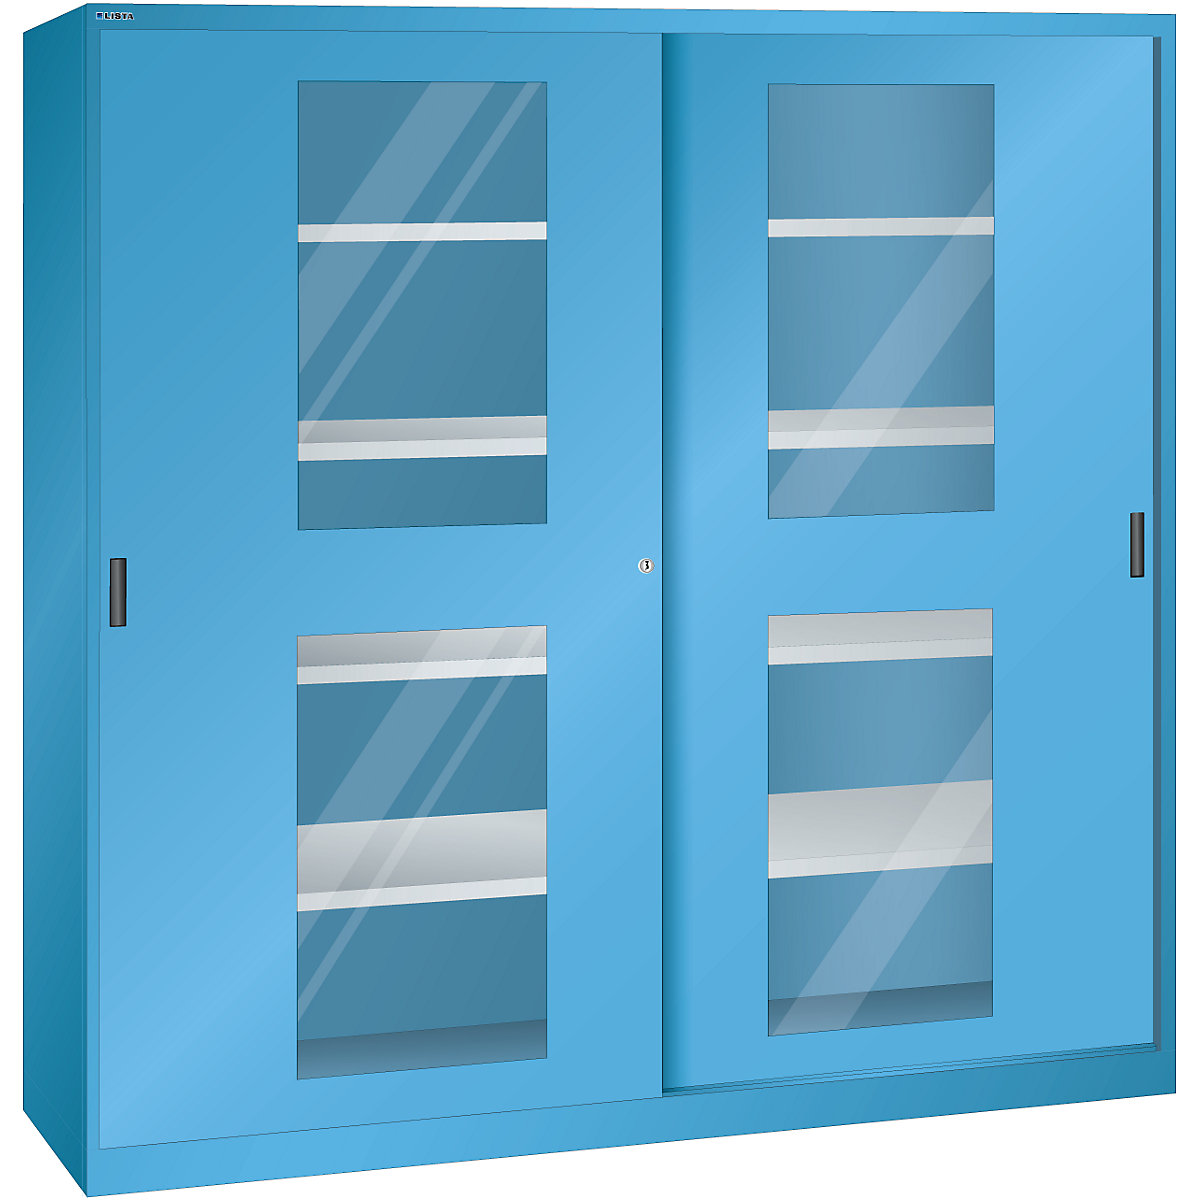 Sliding door cupboard with vision panel doors – LISTA